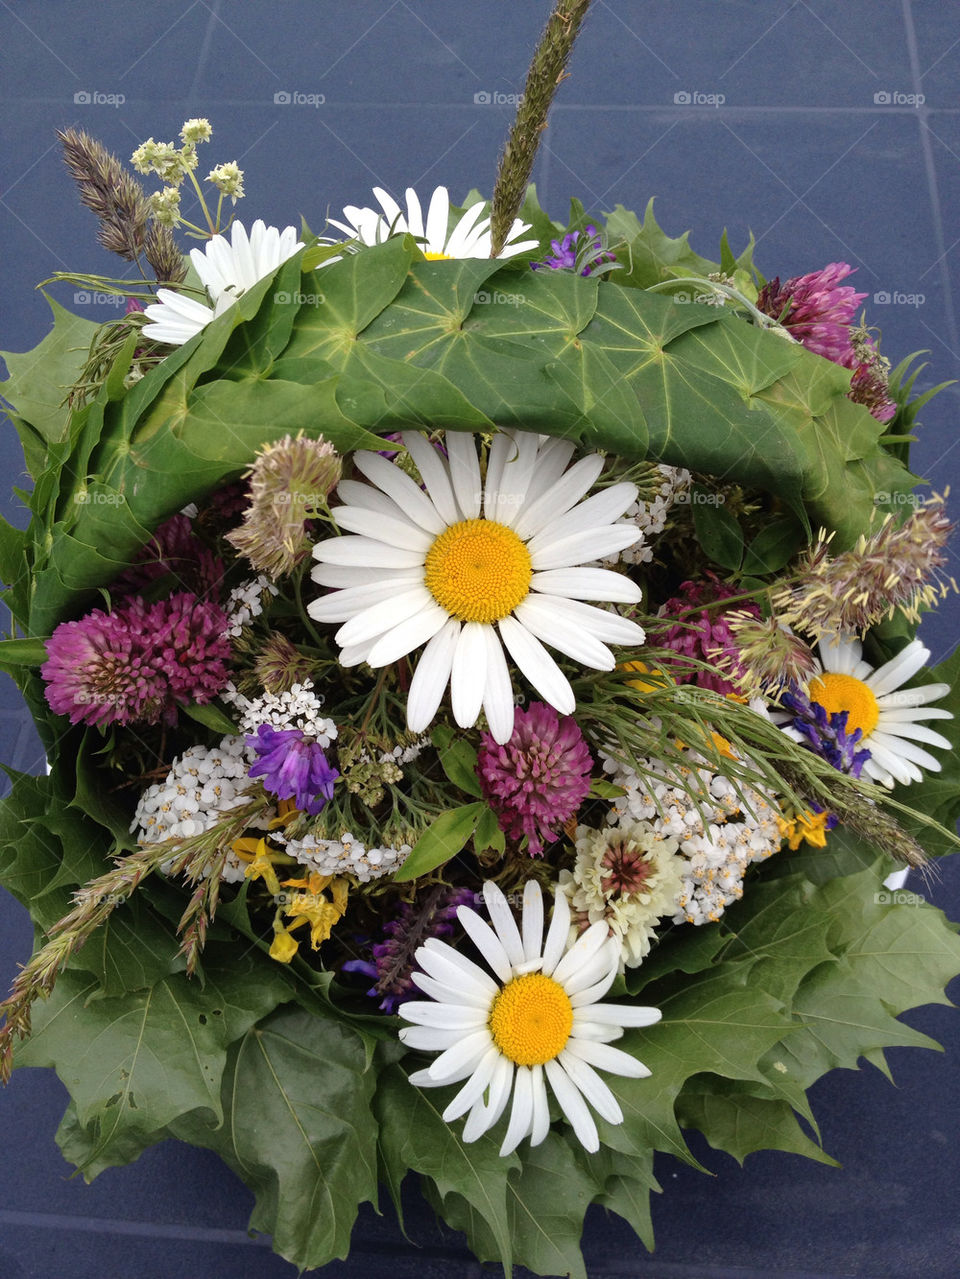 sweden flowers plants basket by casperlo